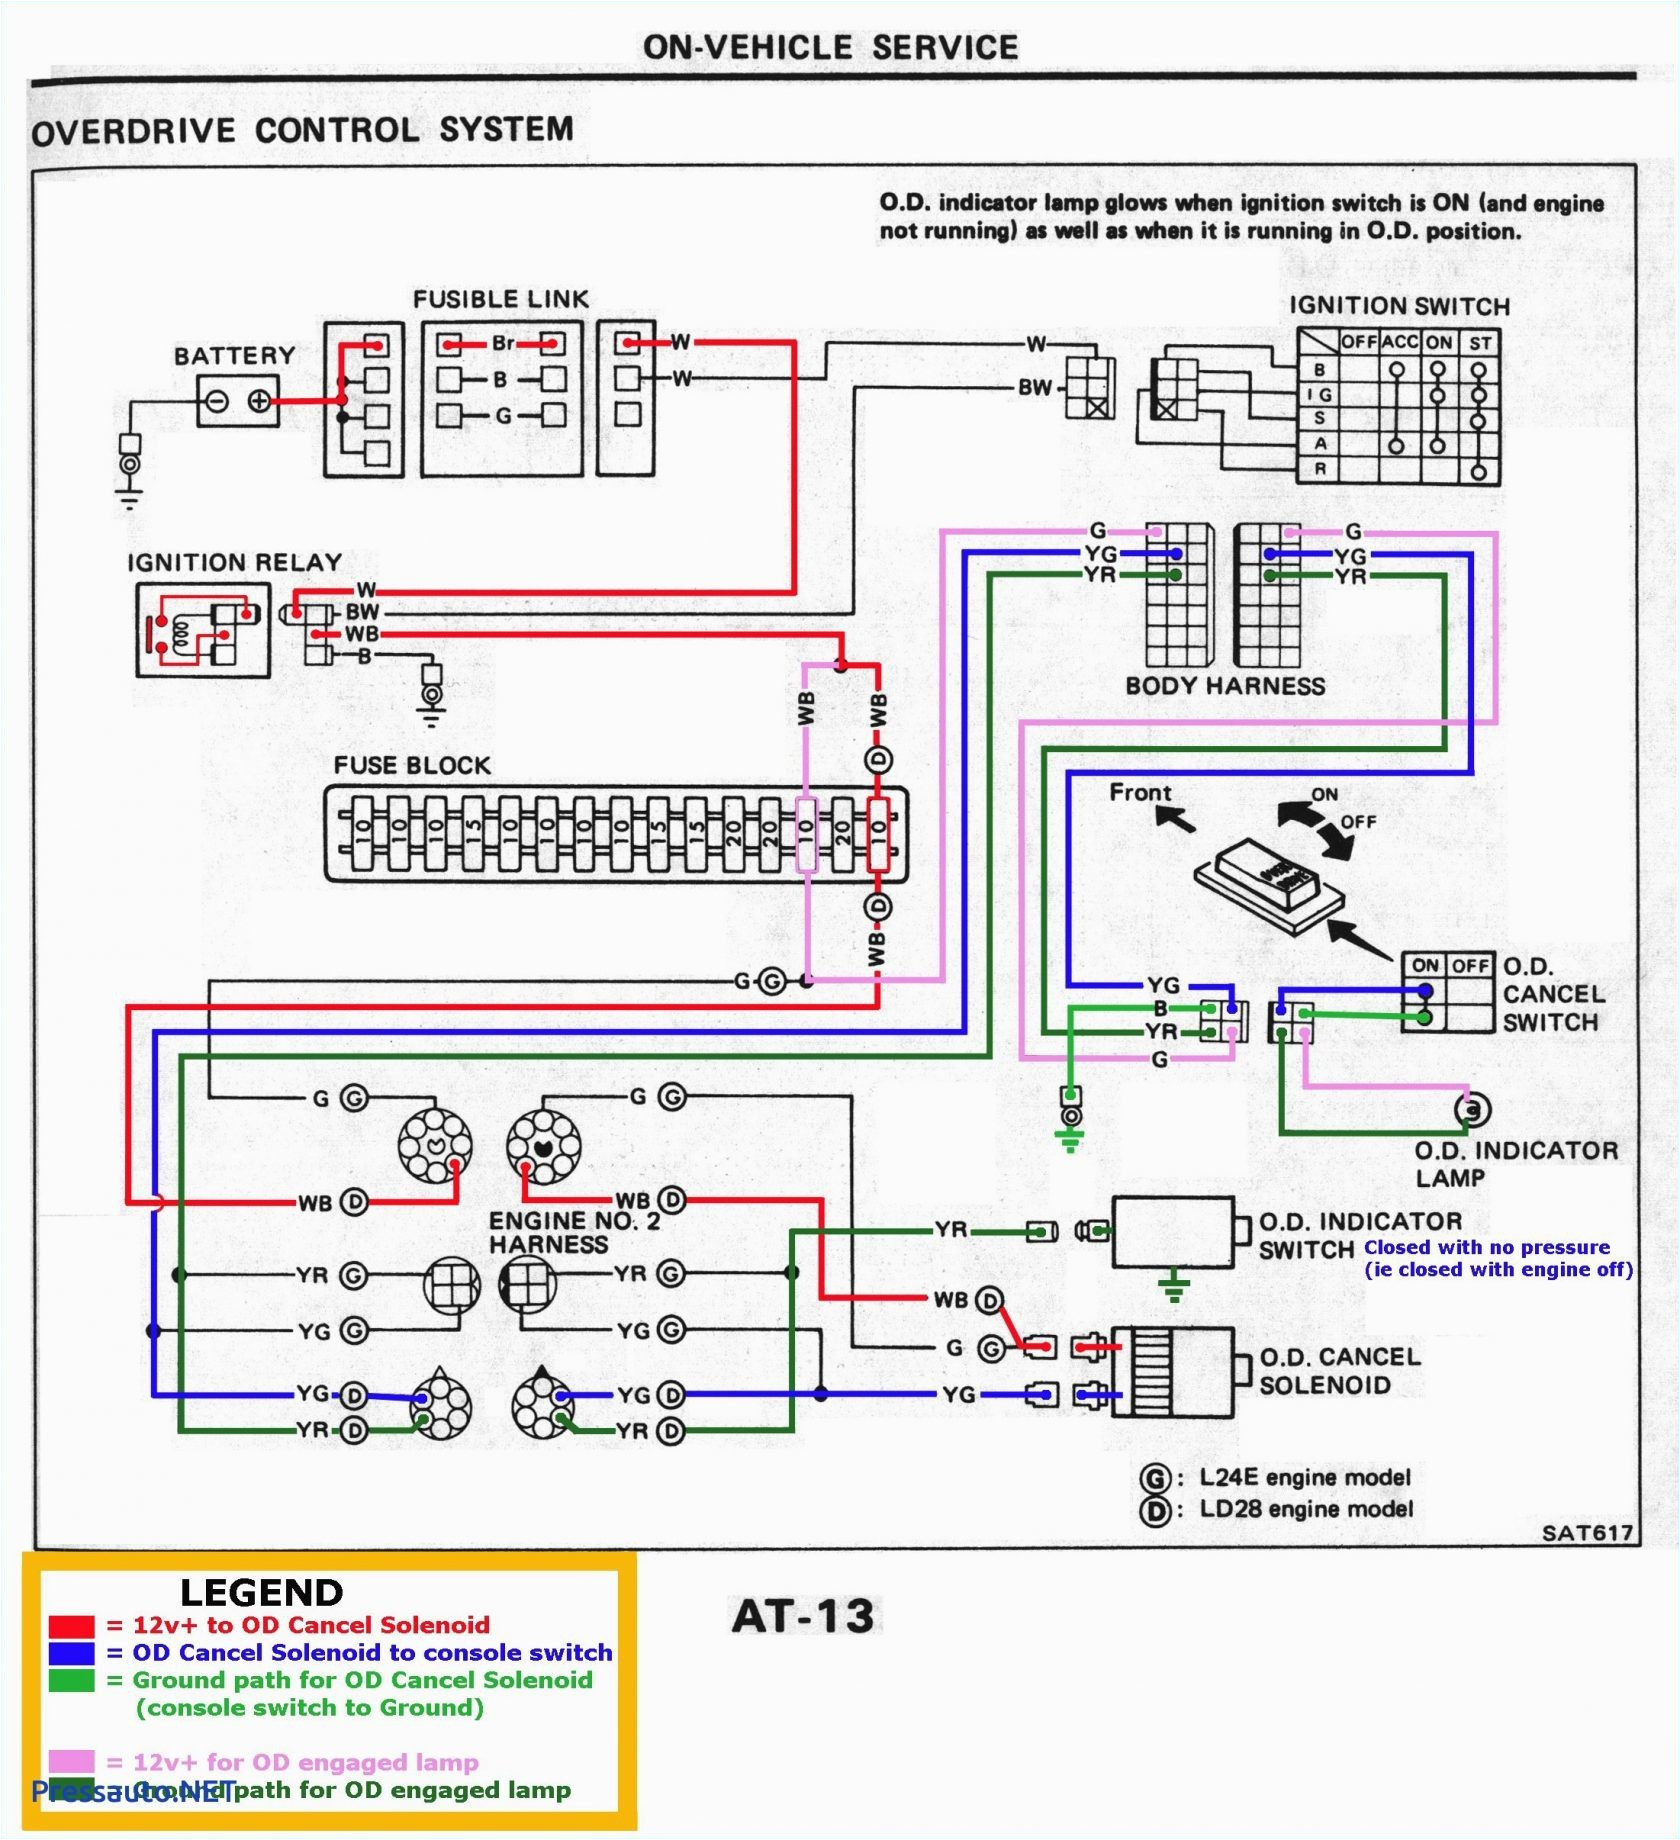 python 1401 wiring diagram wiring diagram name python 1401 wiring diagram